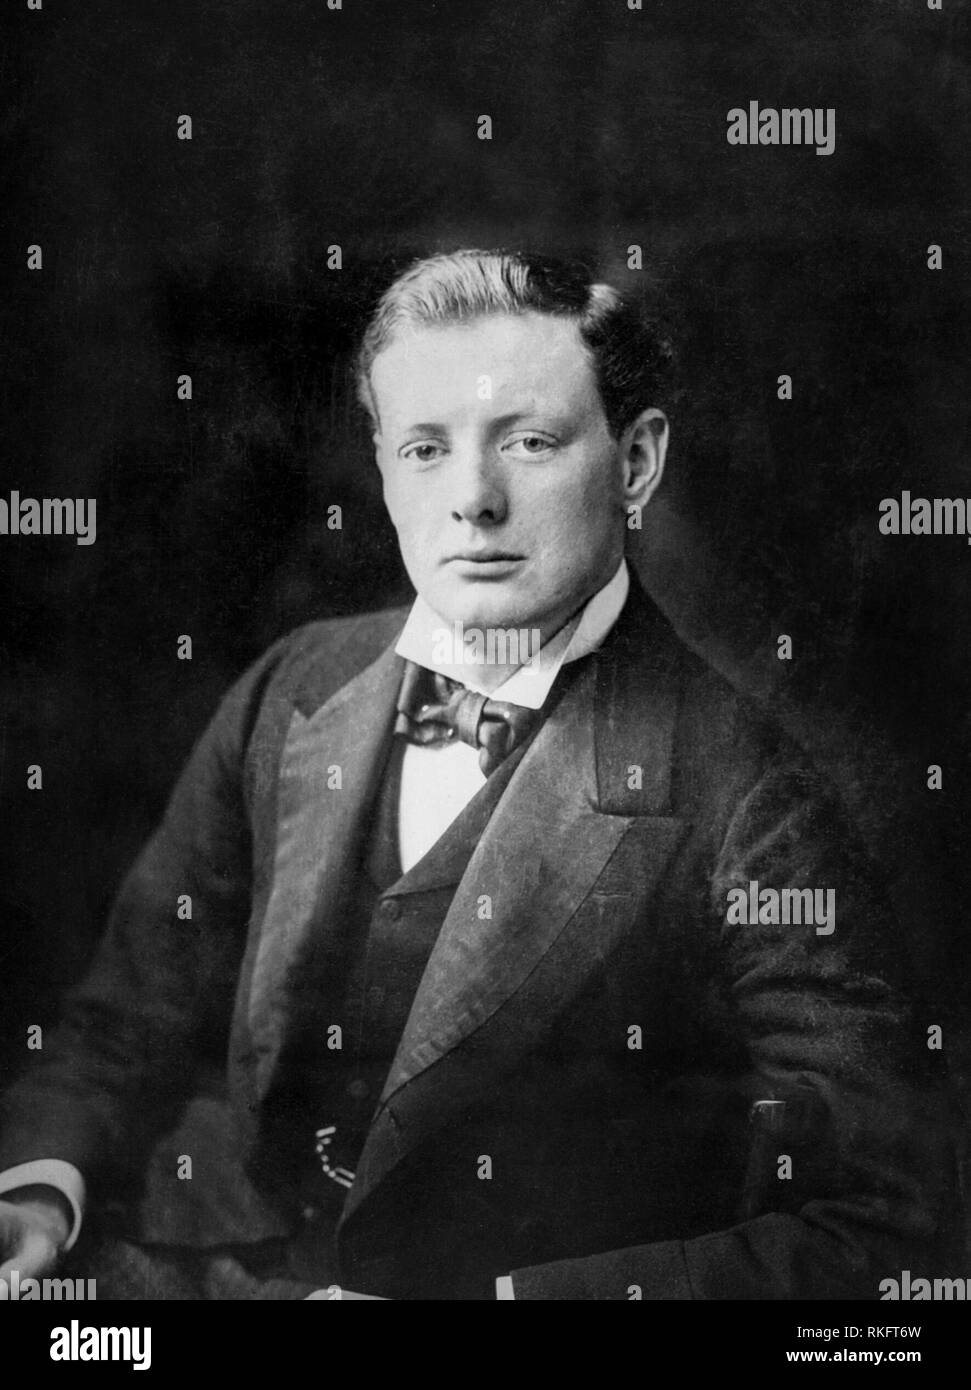 Retrato de Winston Churchill en 1900 como político en la Cámara Baja del Parlamento como un hombre joven Foto de stock